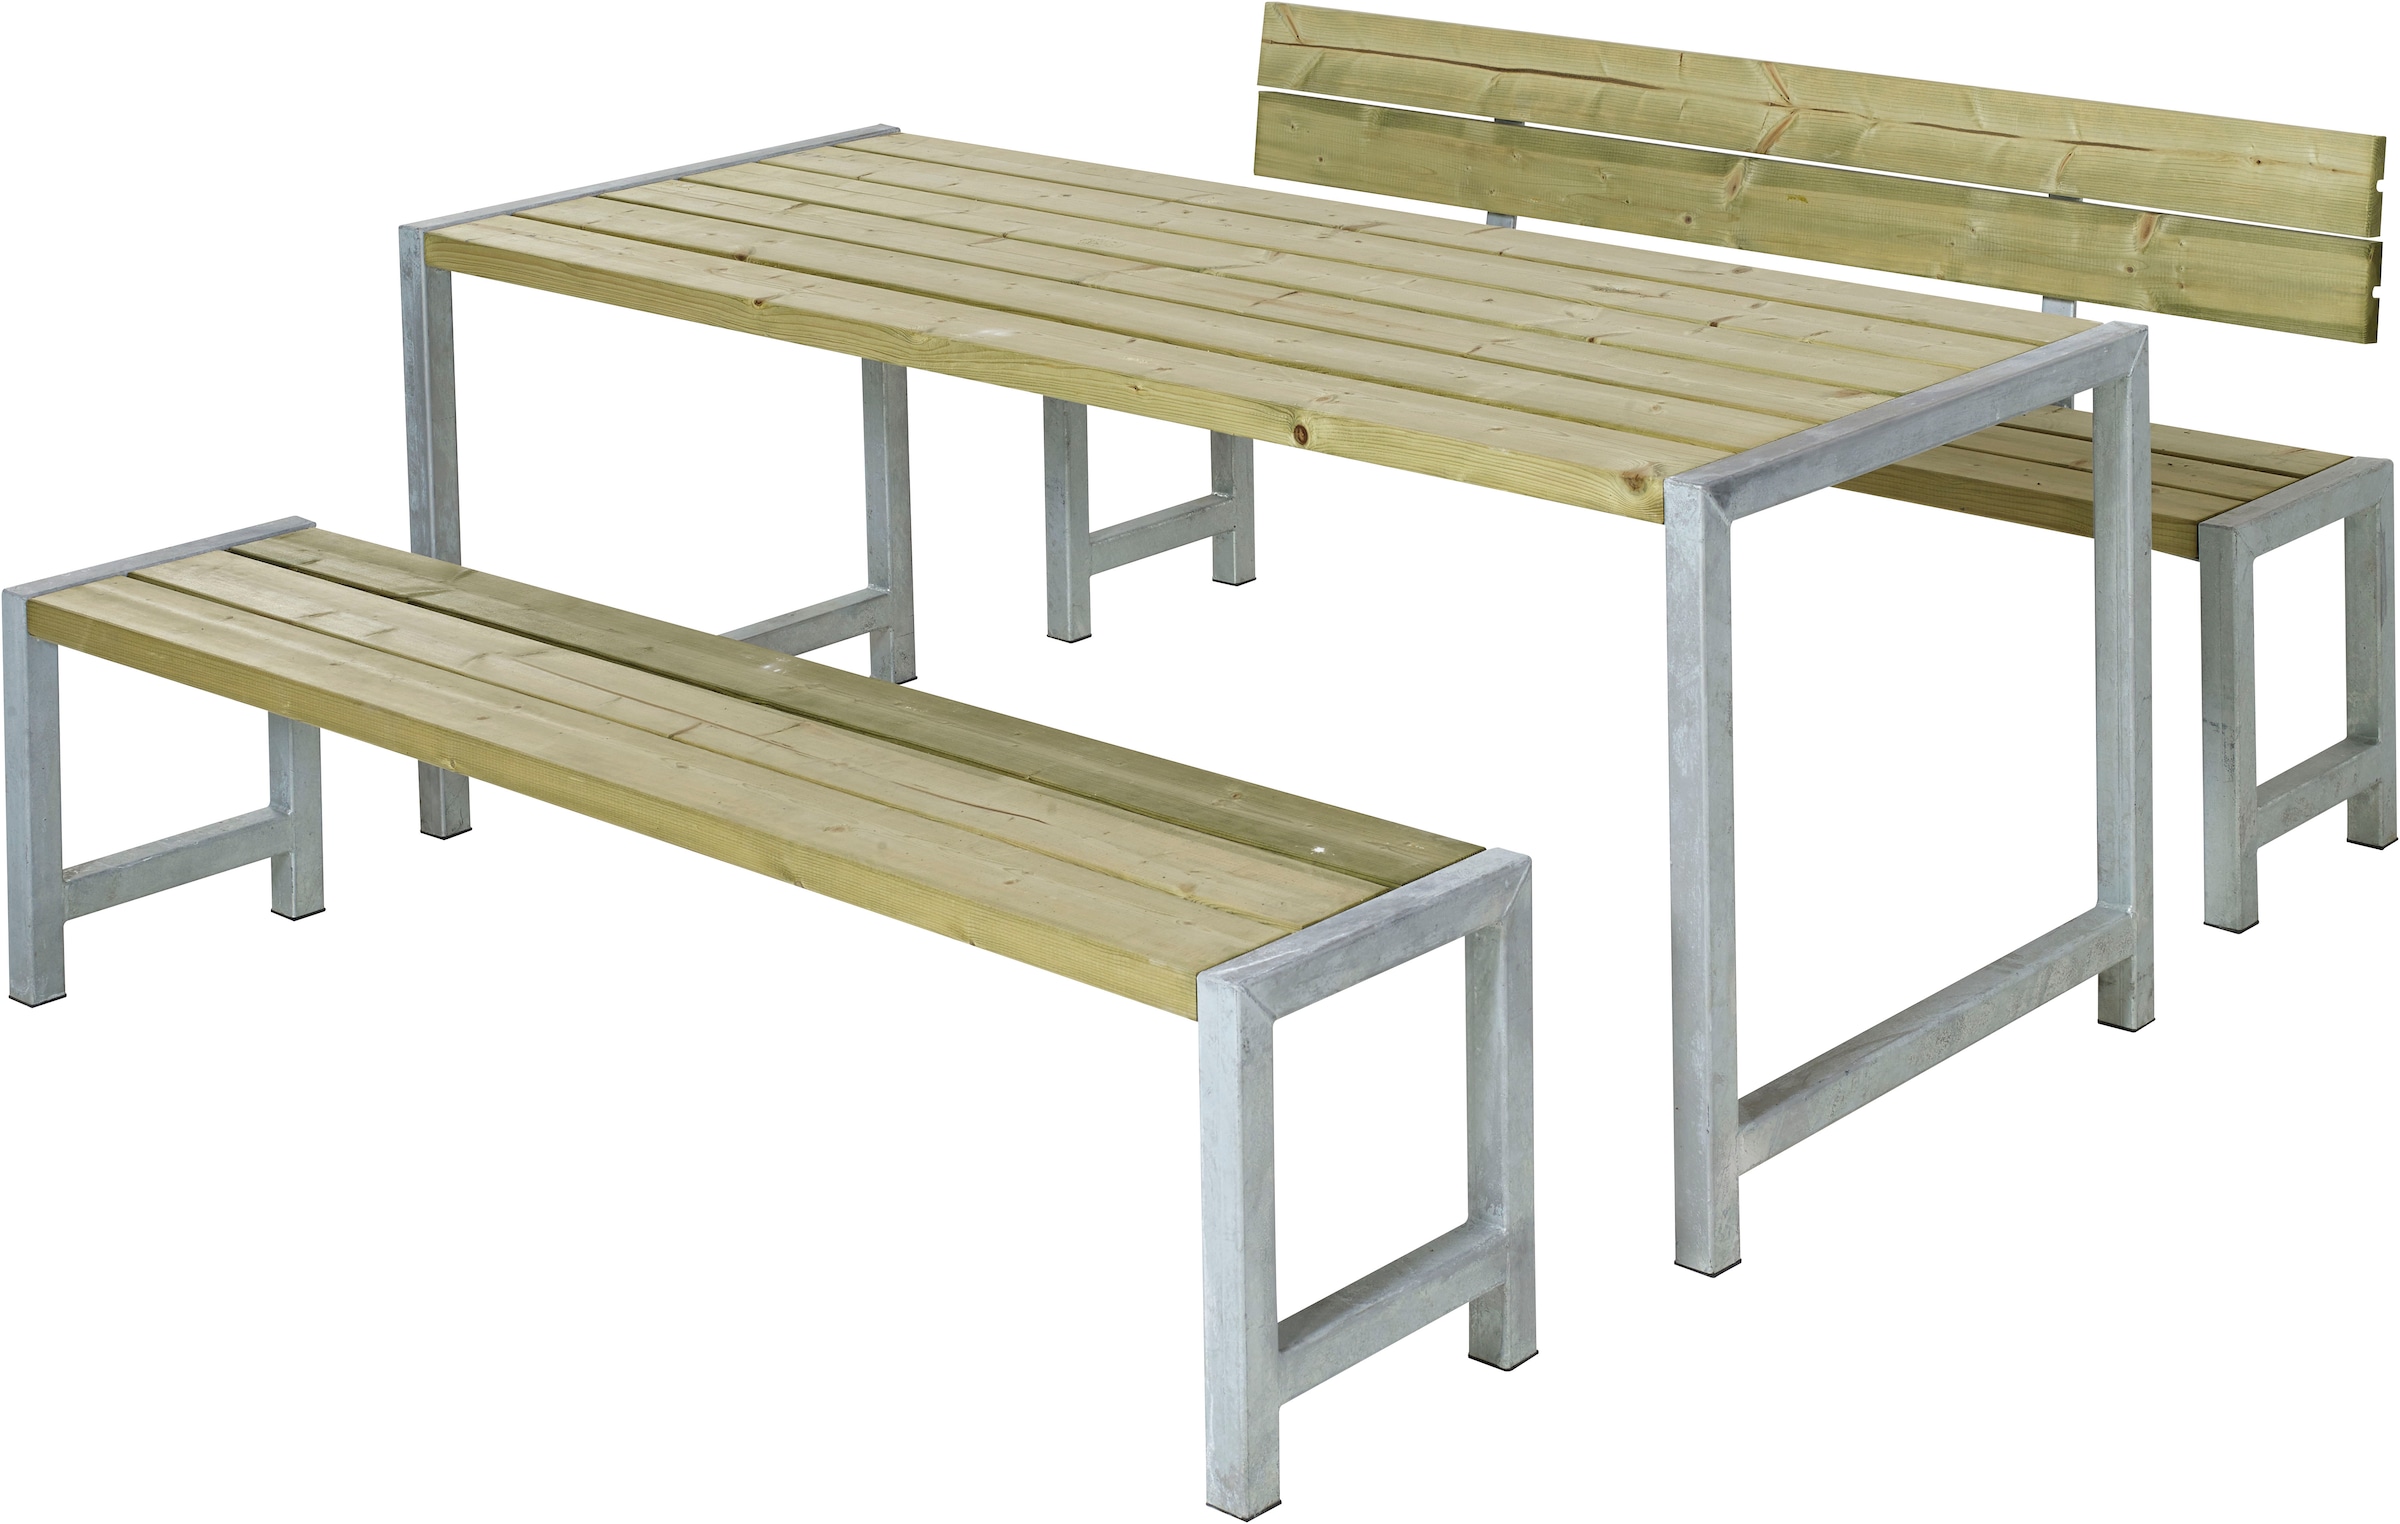 PLUS Garten-Essgruppe »Plankengarnituren«, (3 tlg.), bestehend aus: Tisch und 2 Bänke + 1 Rückenlehne